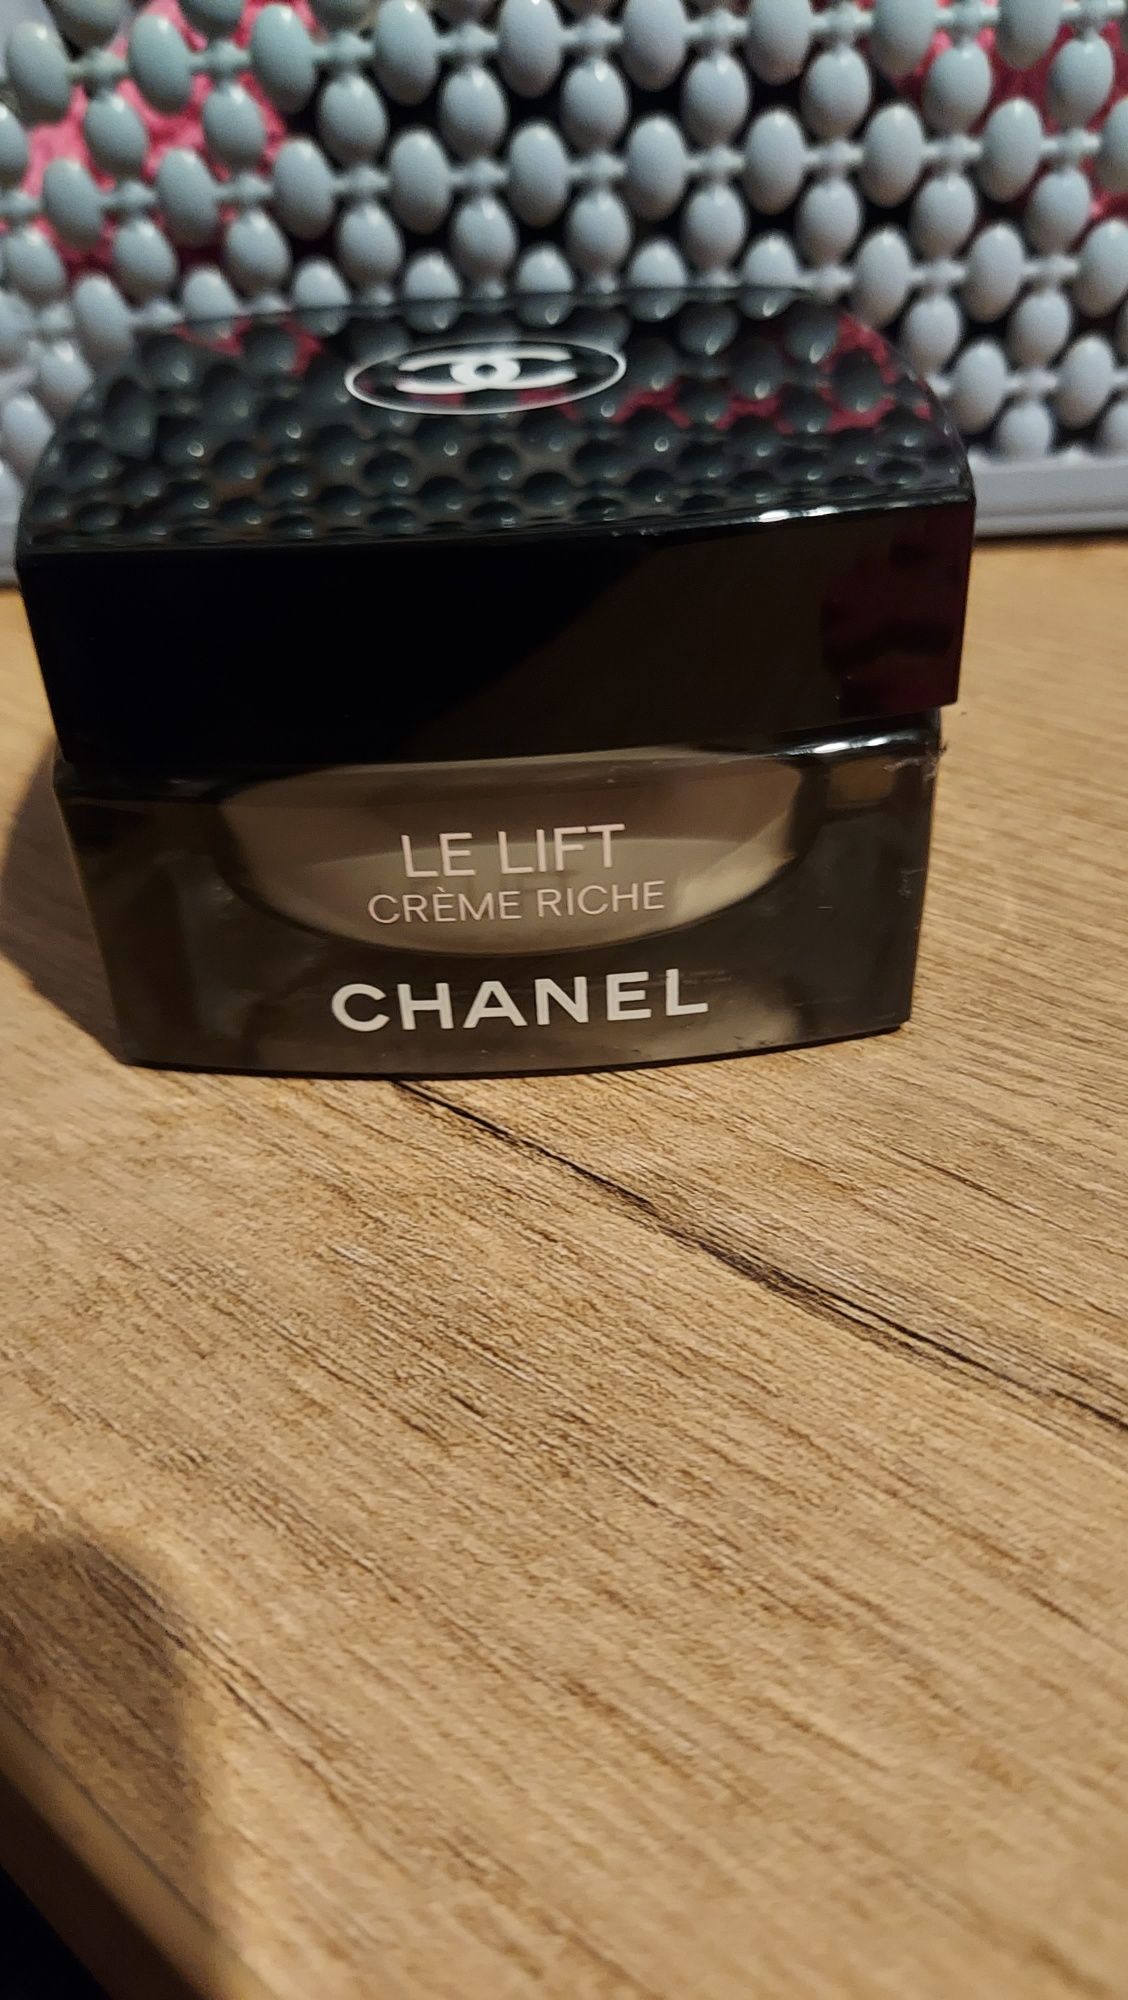 Chanel le lift creme riche